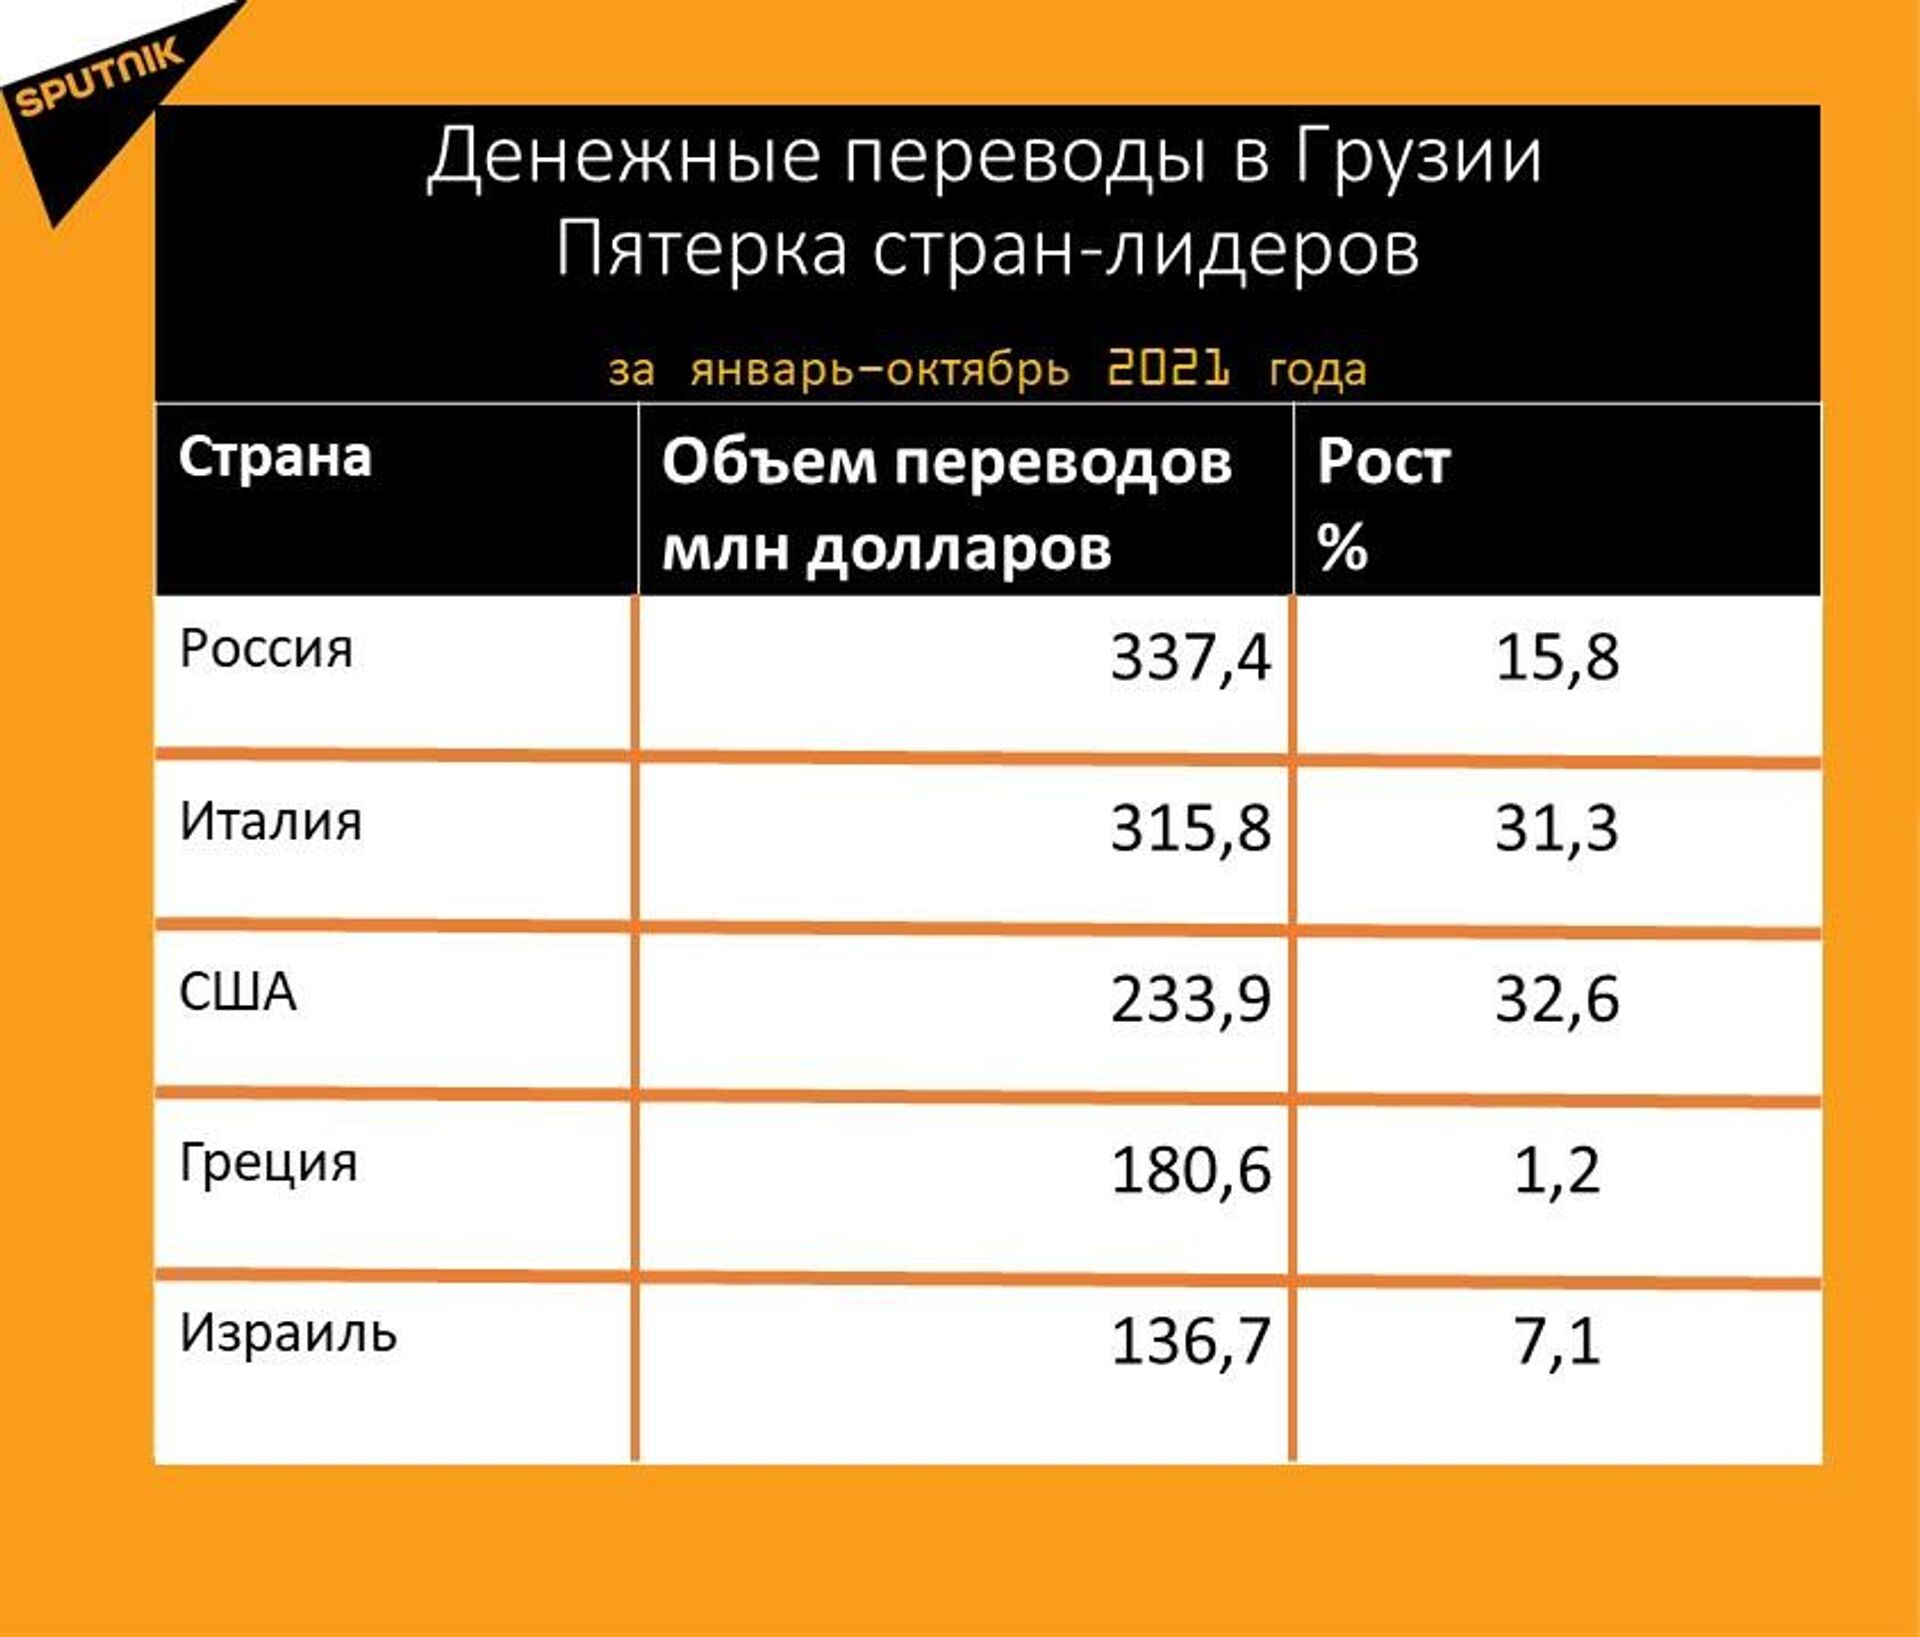 Статистика денежных переводов в Грузию за январь-октябрь 2021 года - Sputnik Грузия, 1920, 17.11.2021